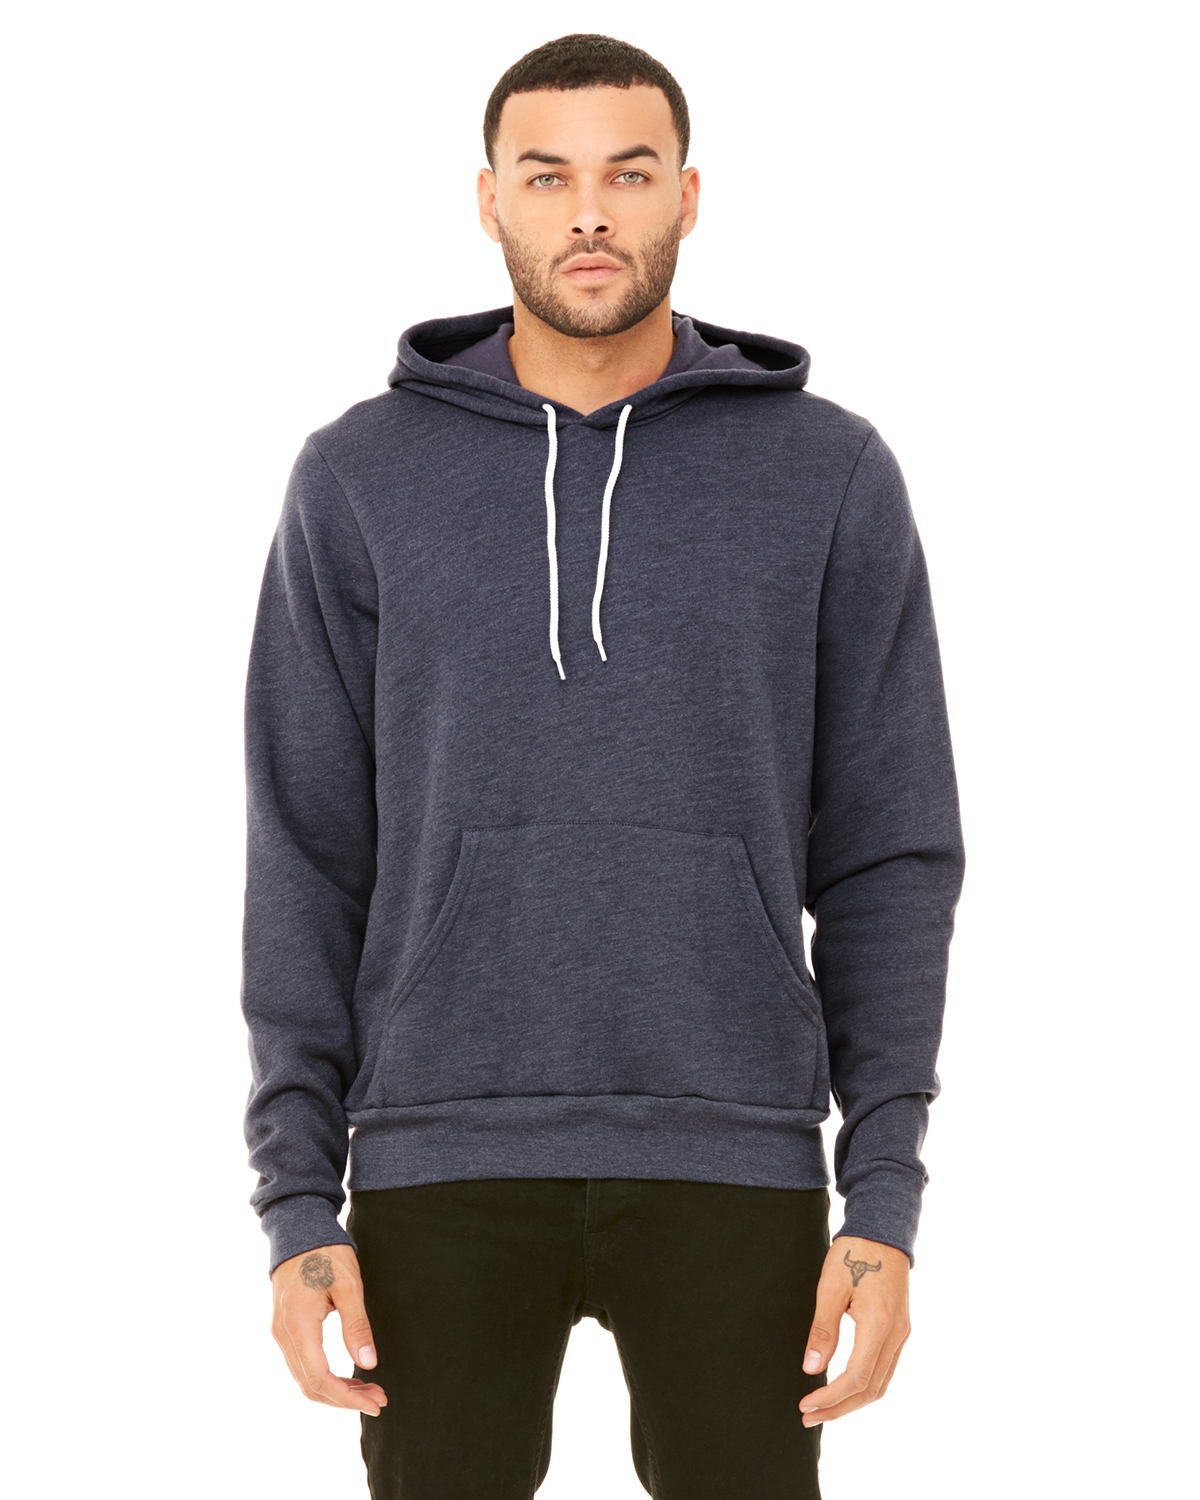 custom-hoodies-no-minimum-design-custom-hoodies-online